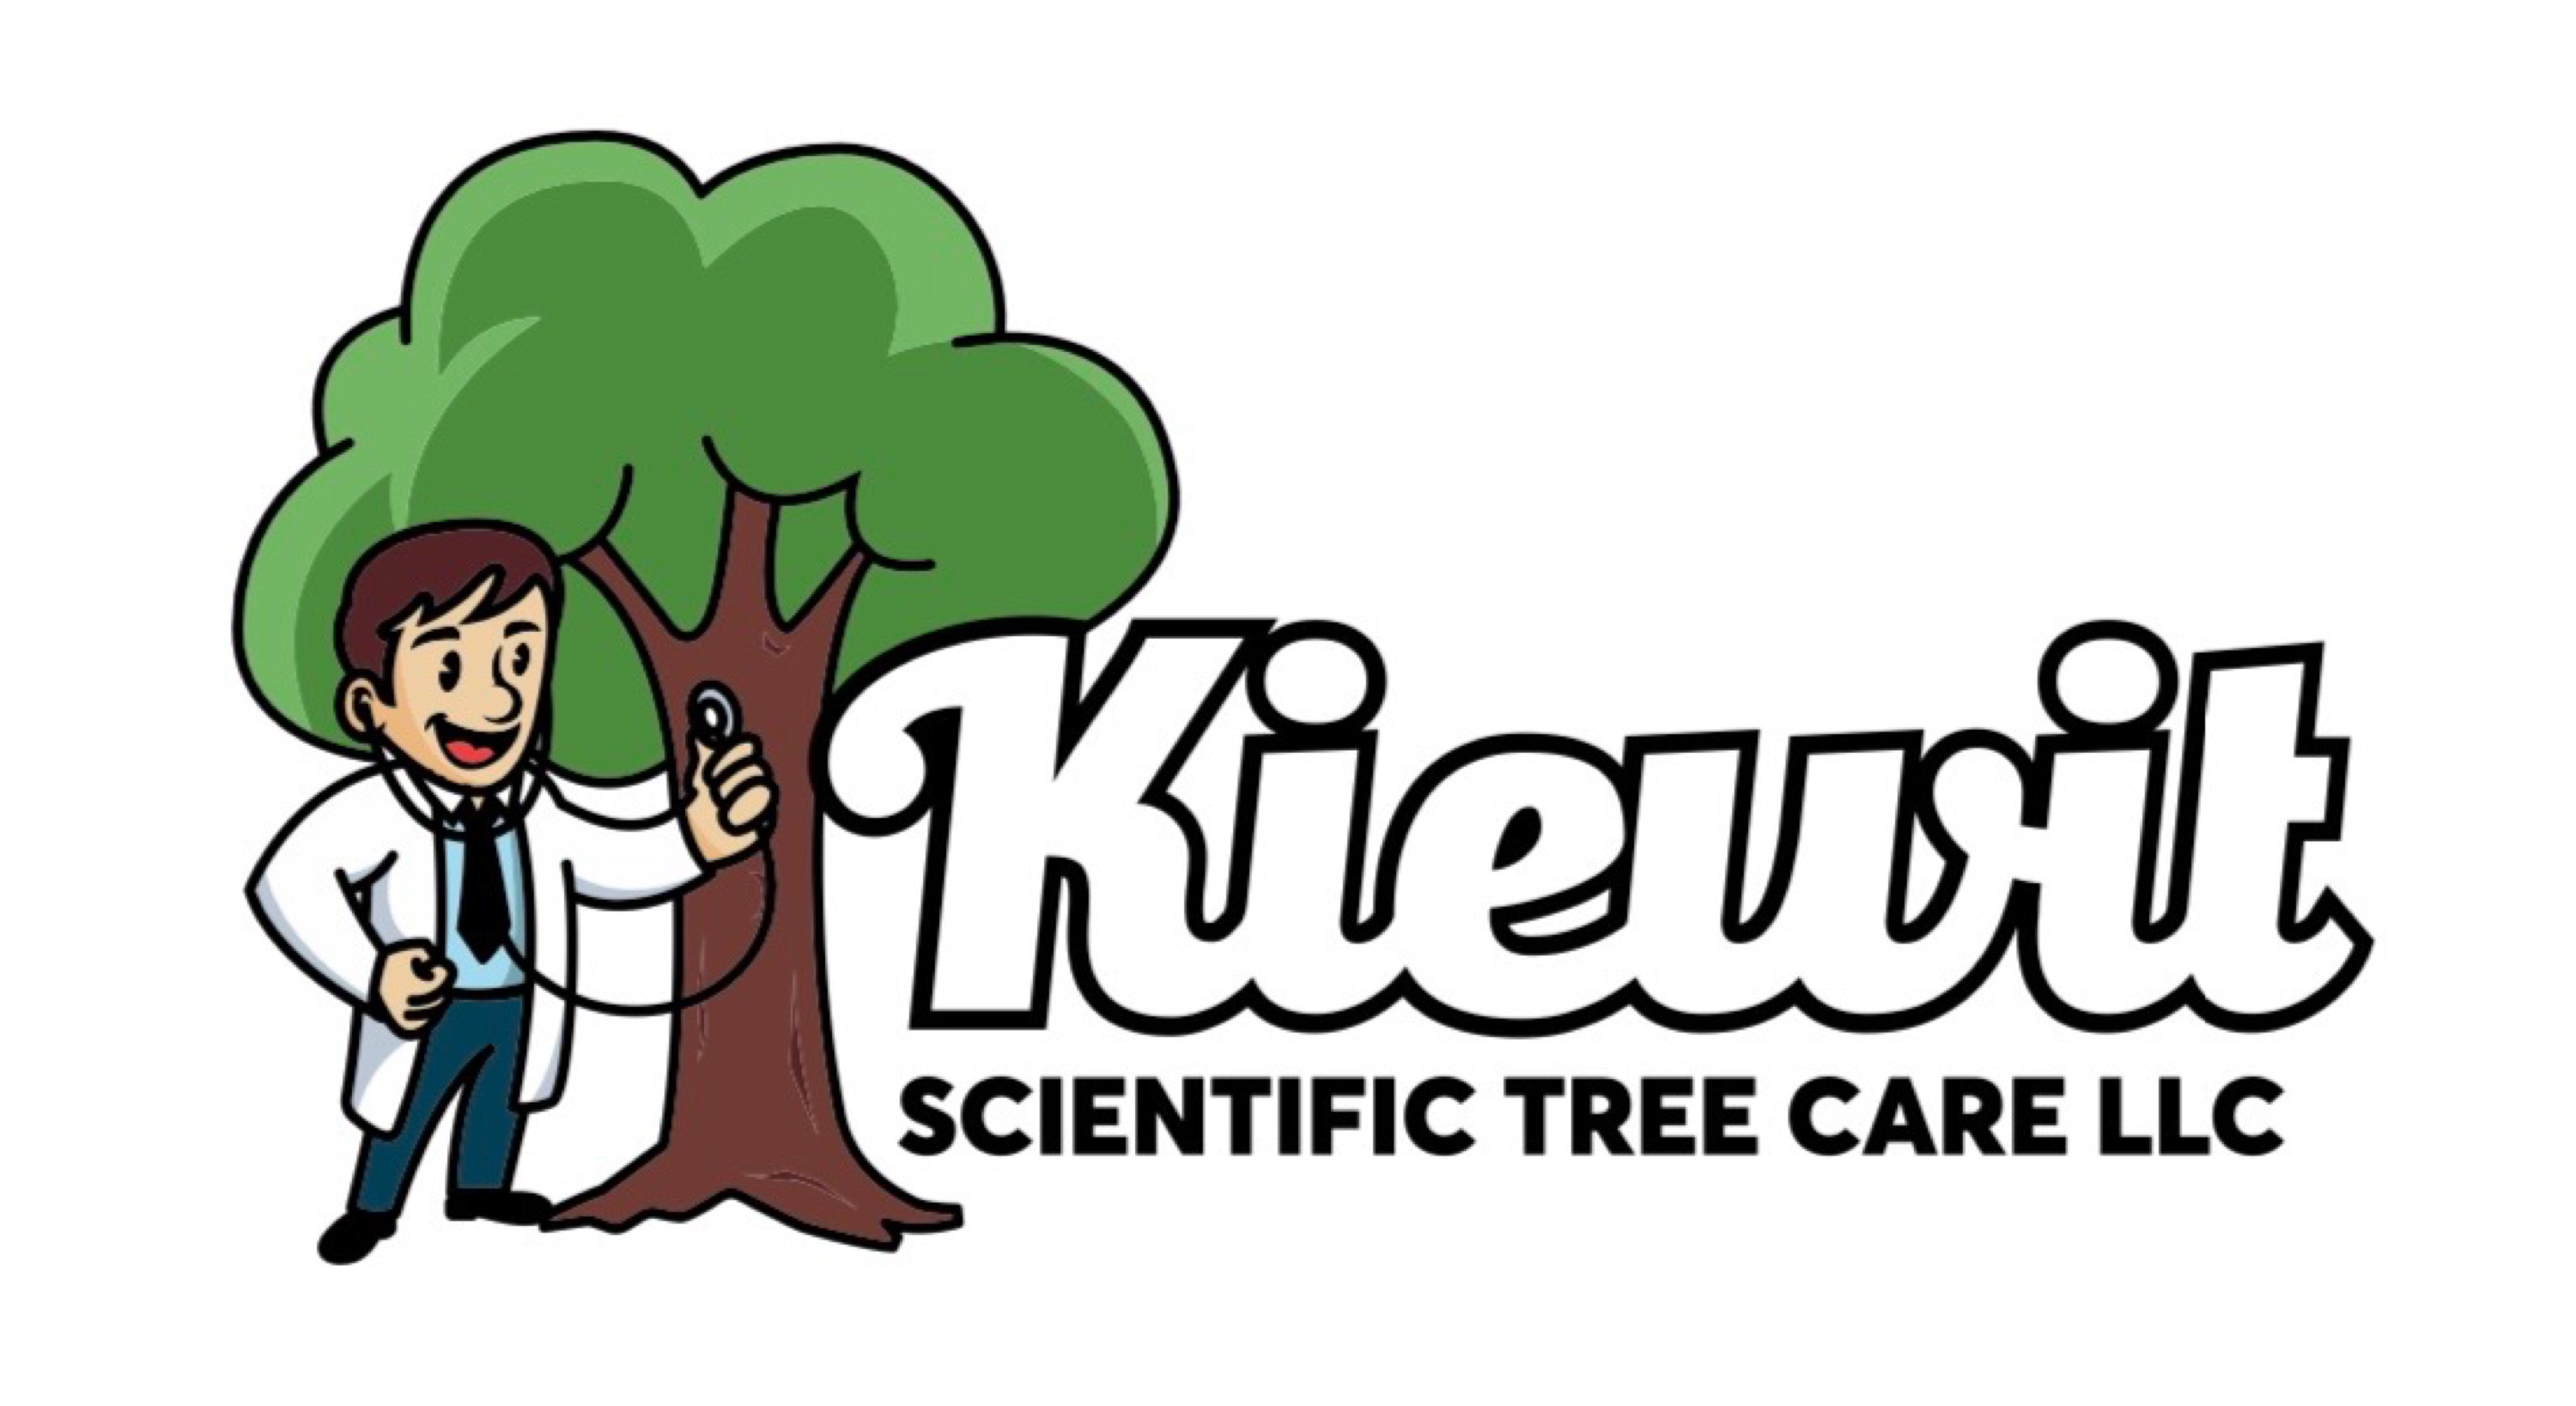 Kiewit Scientific Tree Care LLC Logo